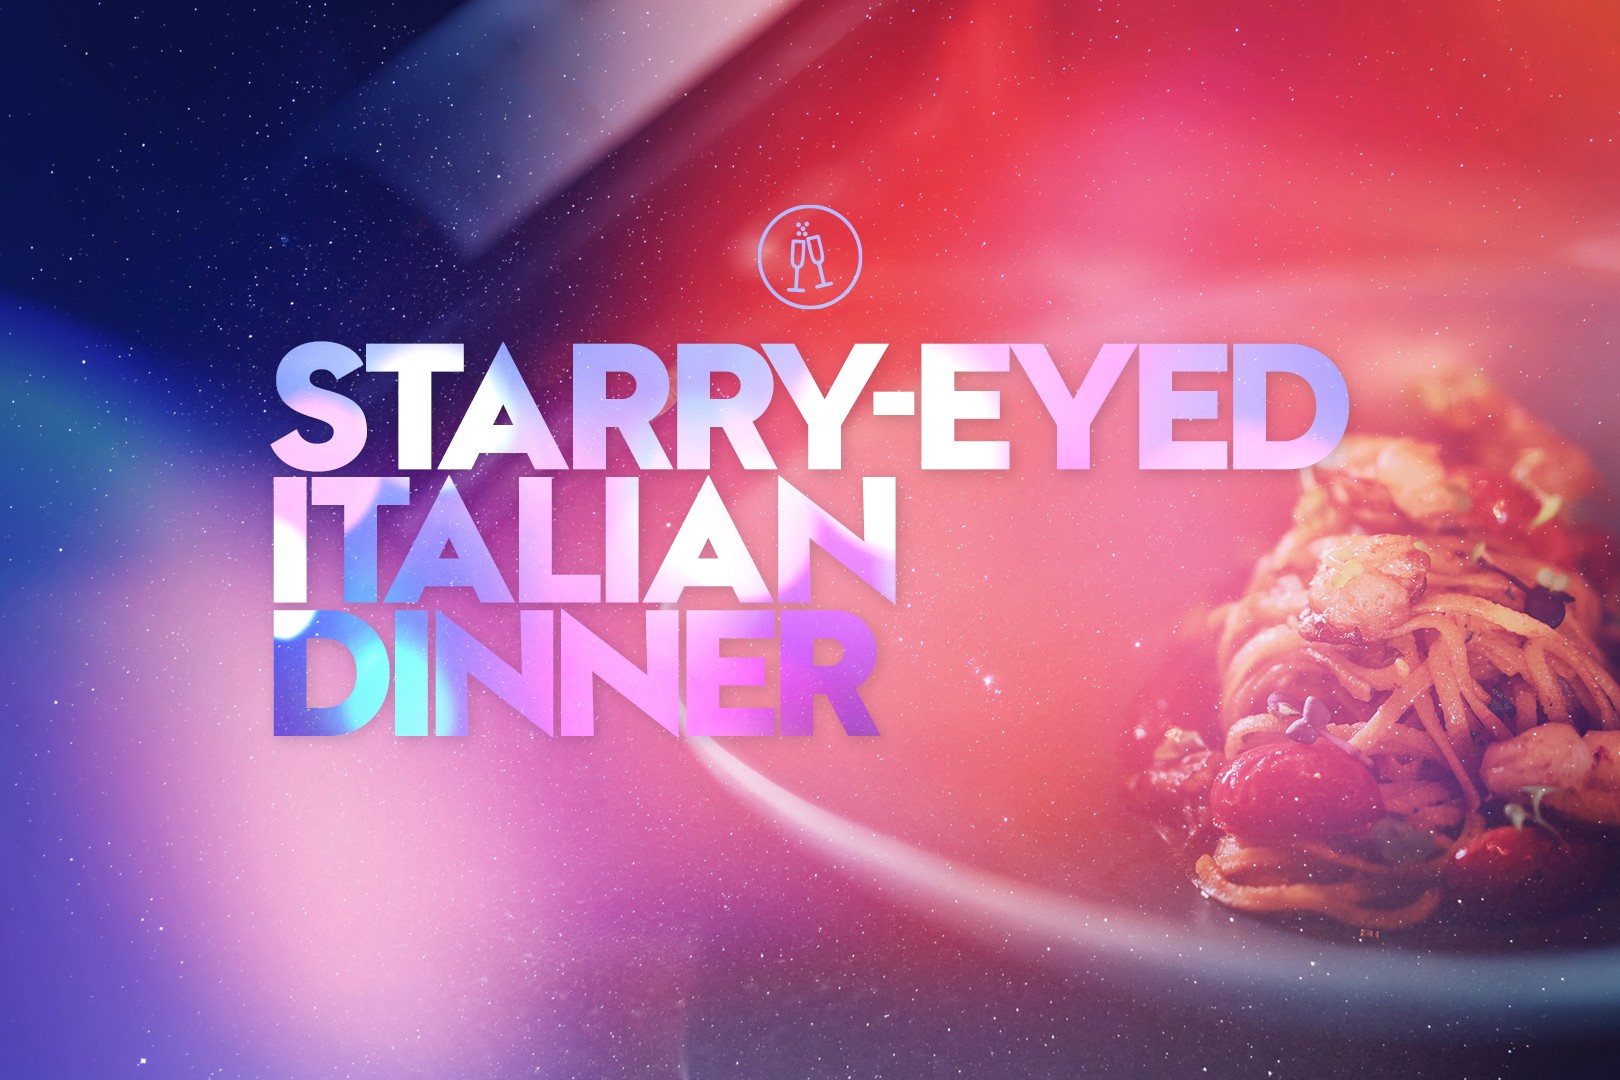 STARRY-EYED ITALIAN DINNER